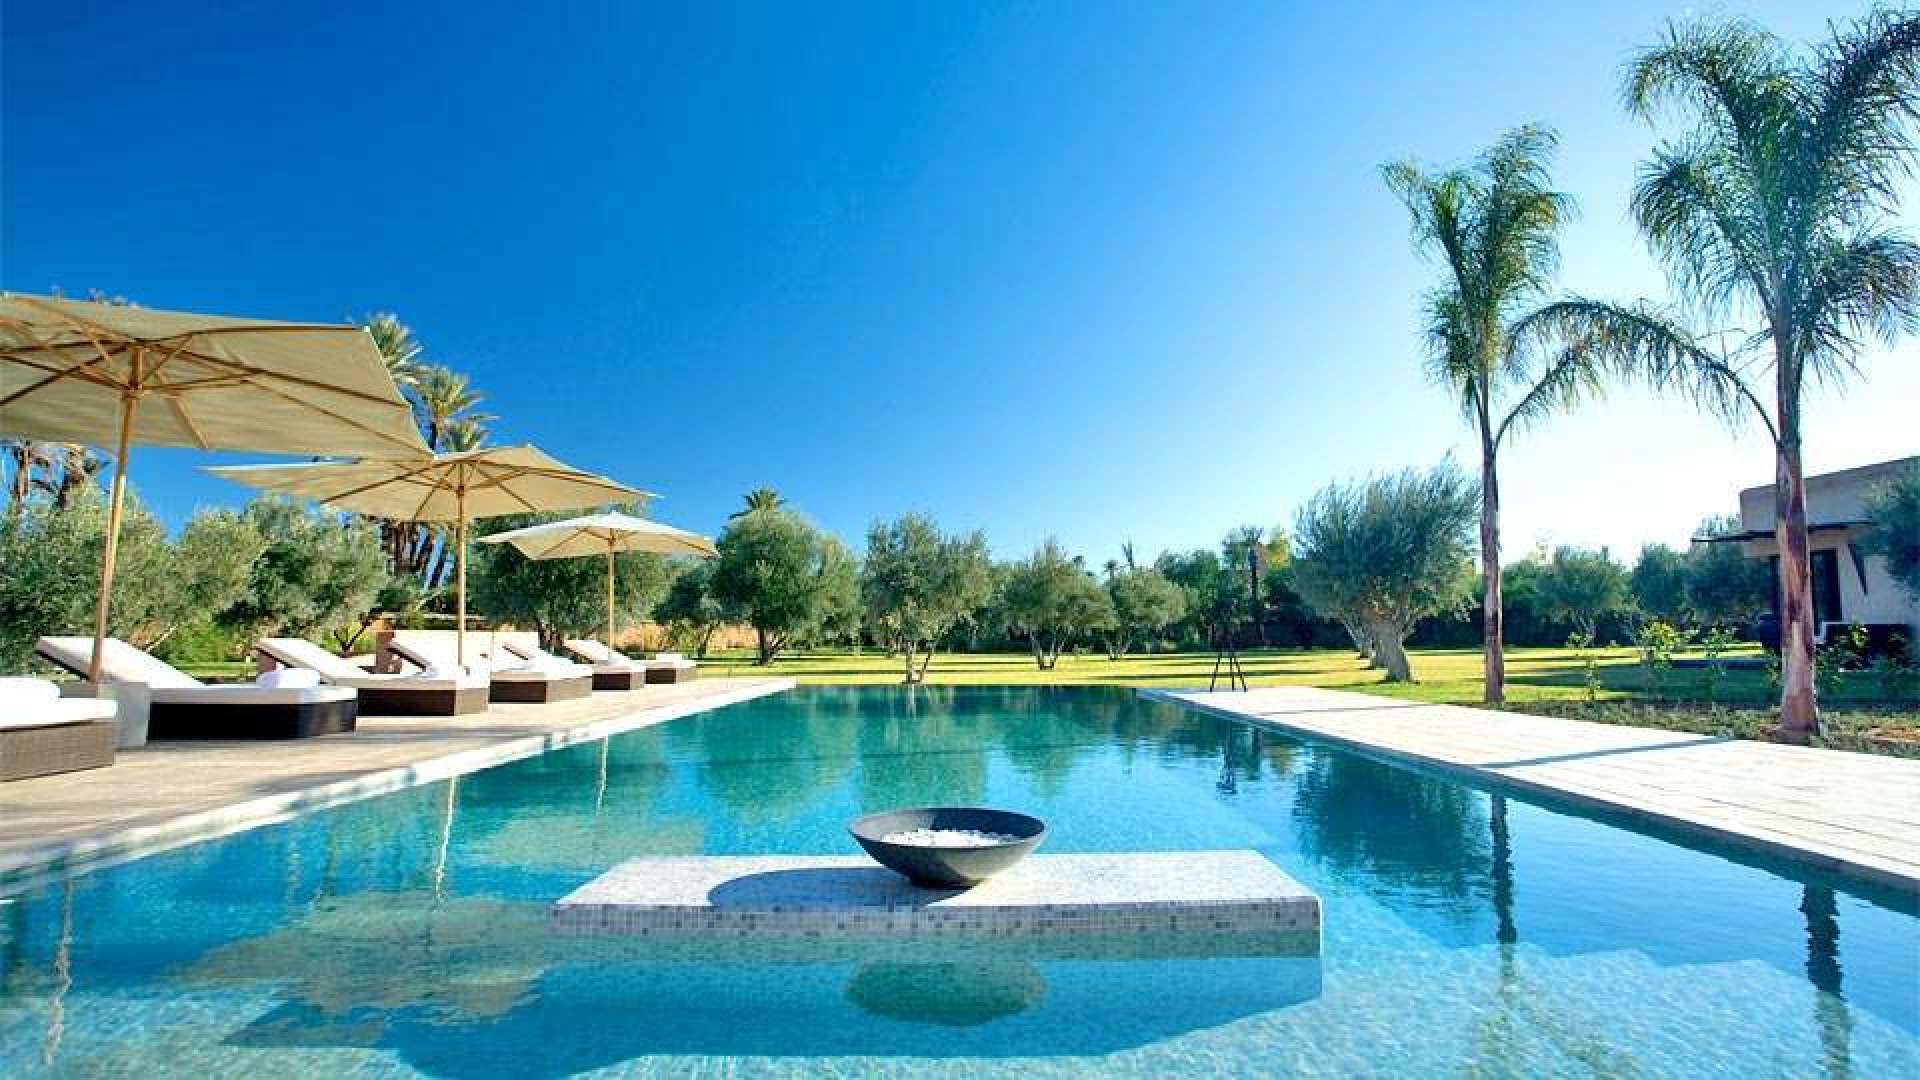 Location de vacances,Villa,VILLA DE STYLE CONTEMPORAIN SUR UN BEAU PARC ARBORÉ À LA PALMERAIE,Marrakech,Palmeraie